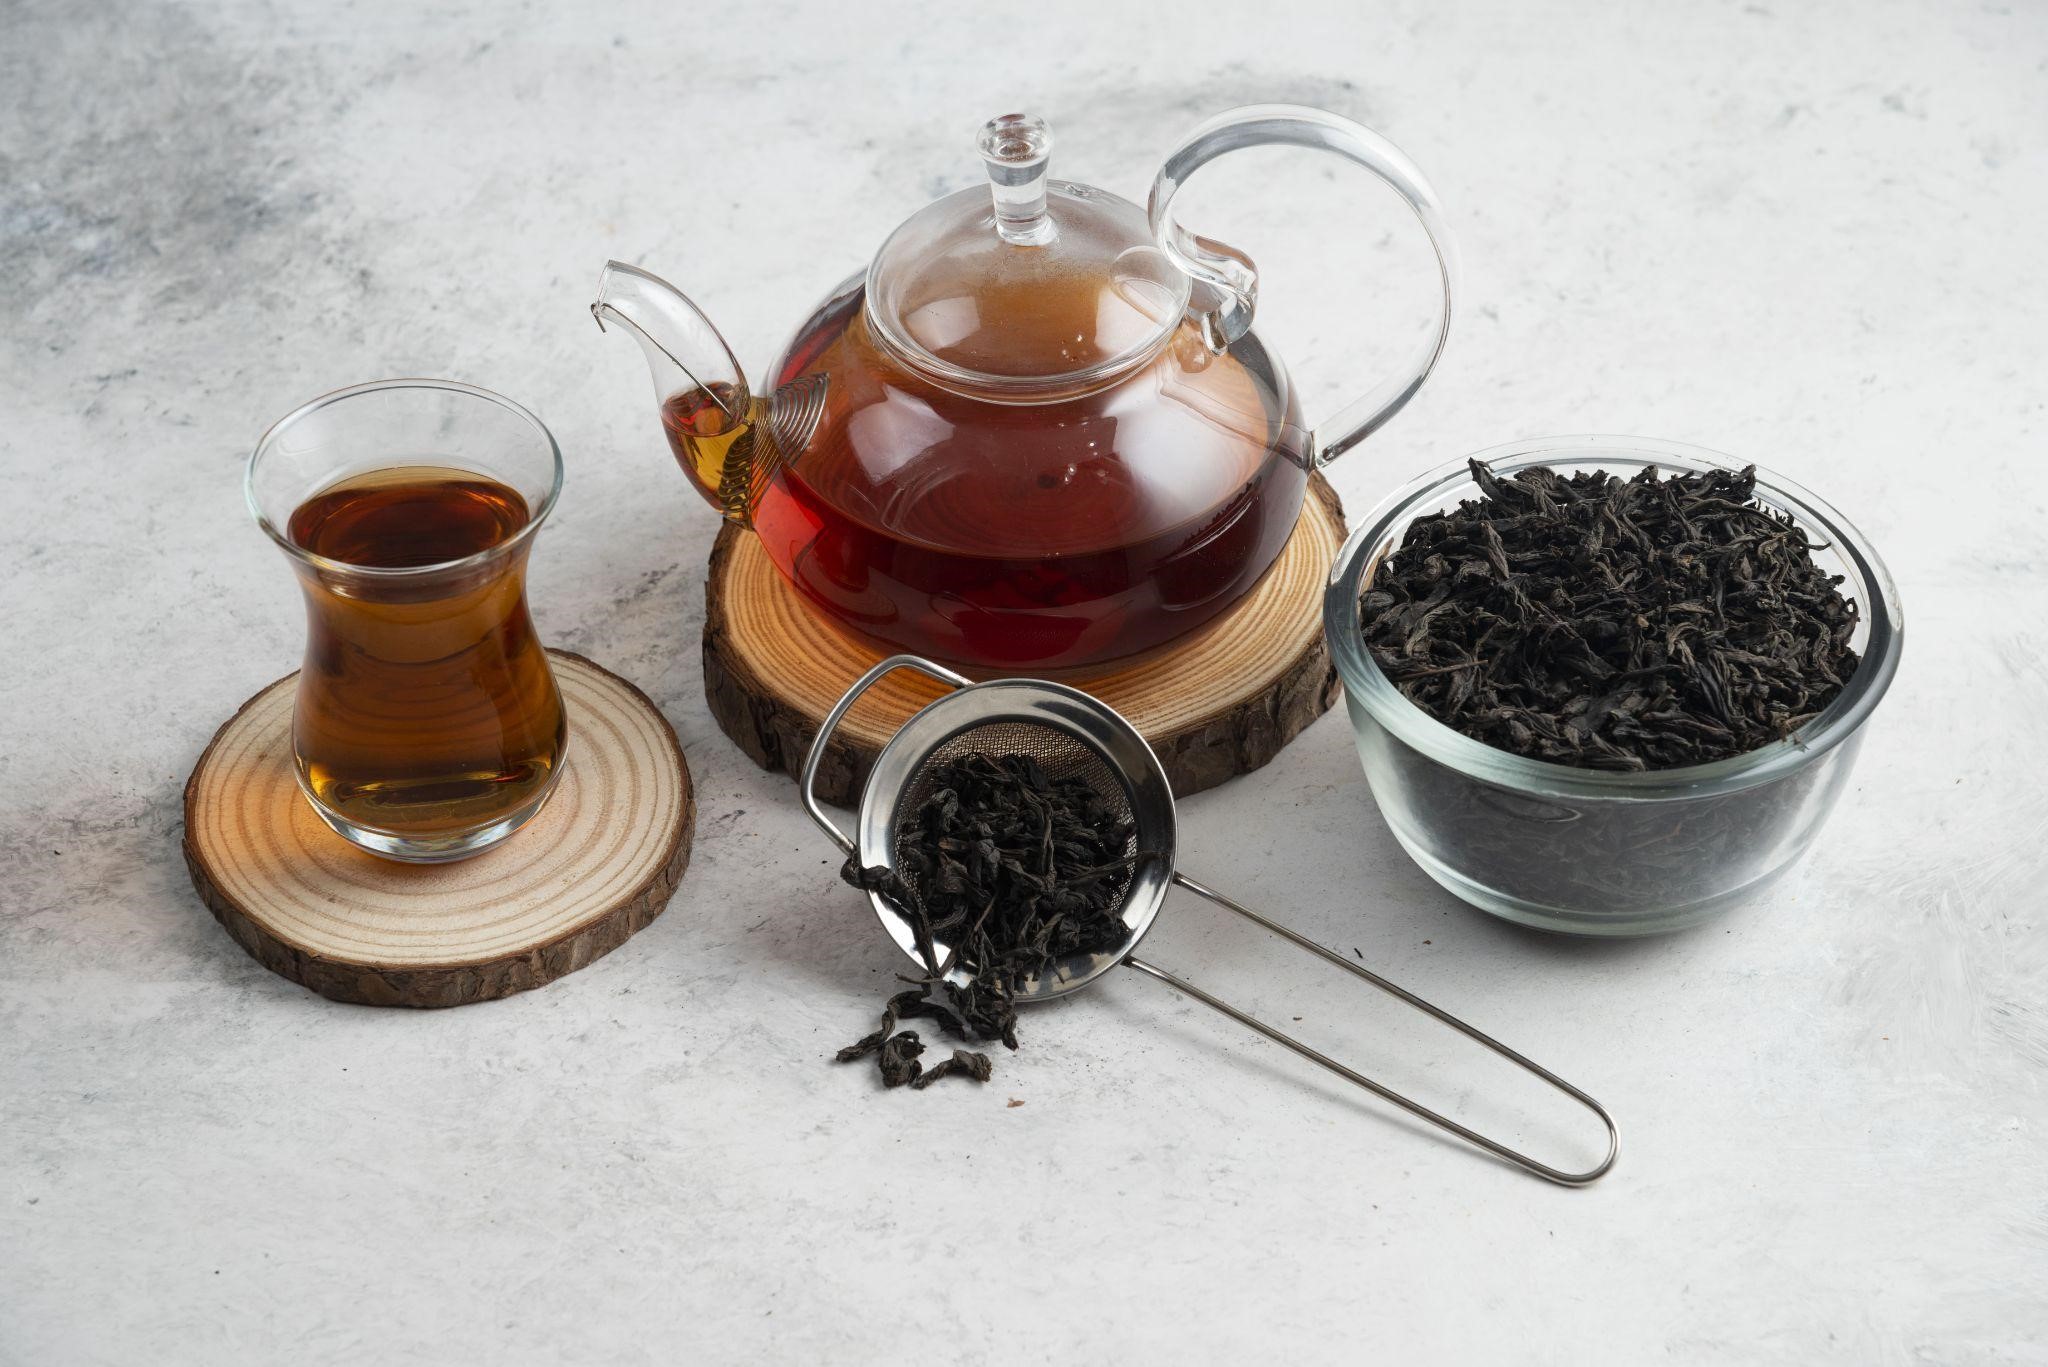 Uống trà gì để giảm mỡ bụng? Eo thon, dáng đẹp với 5 loại trà giảm cân tiêu mỡ hiệu quả